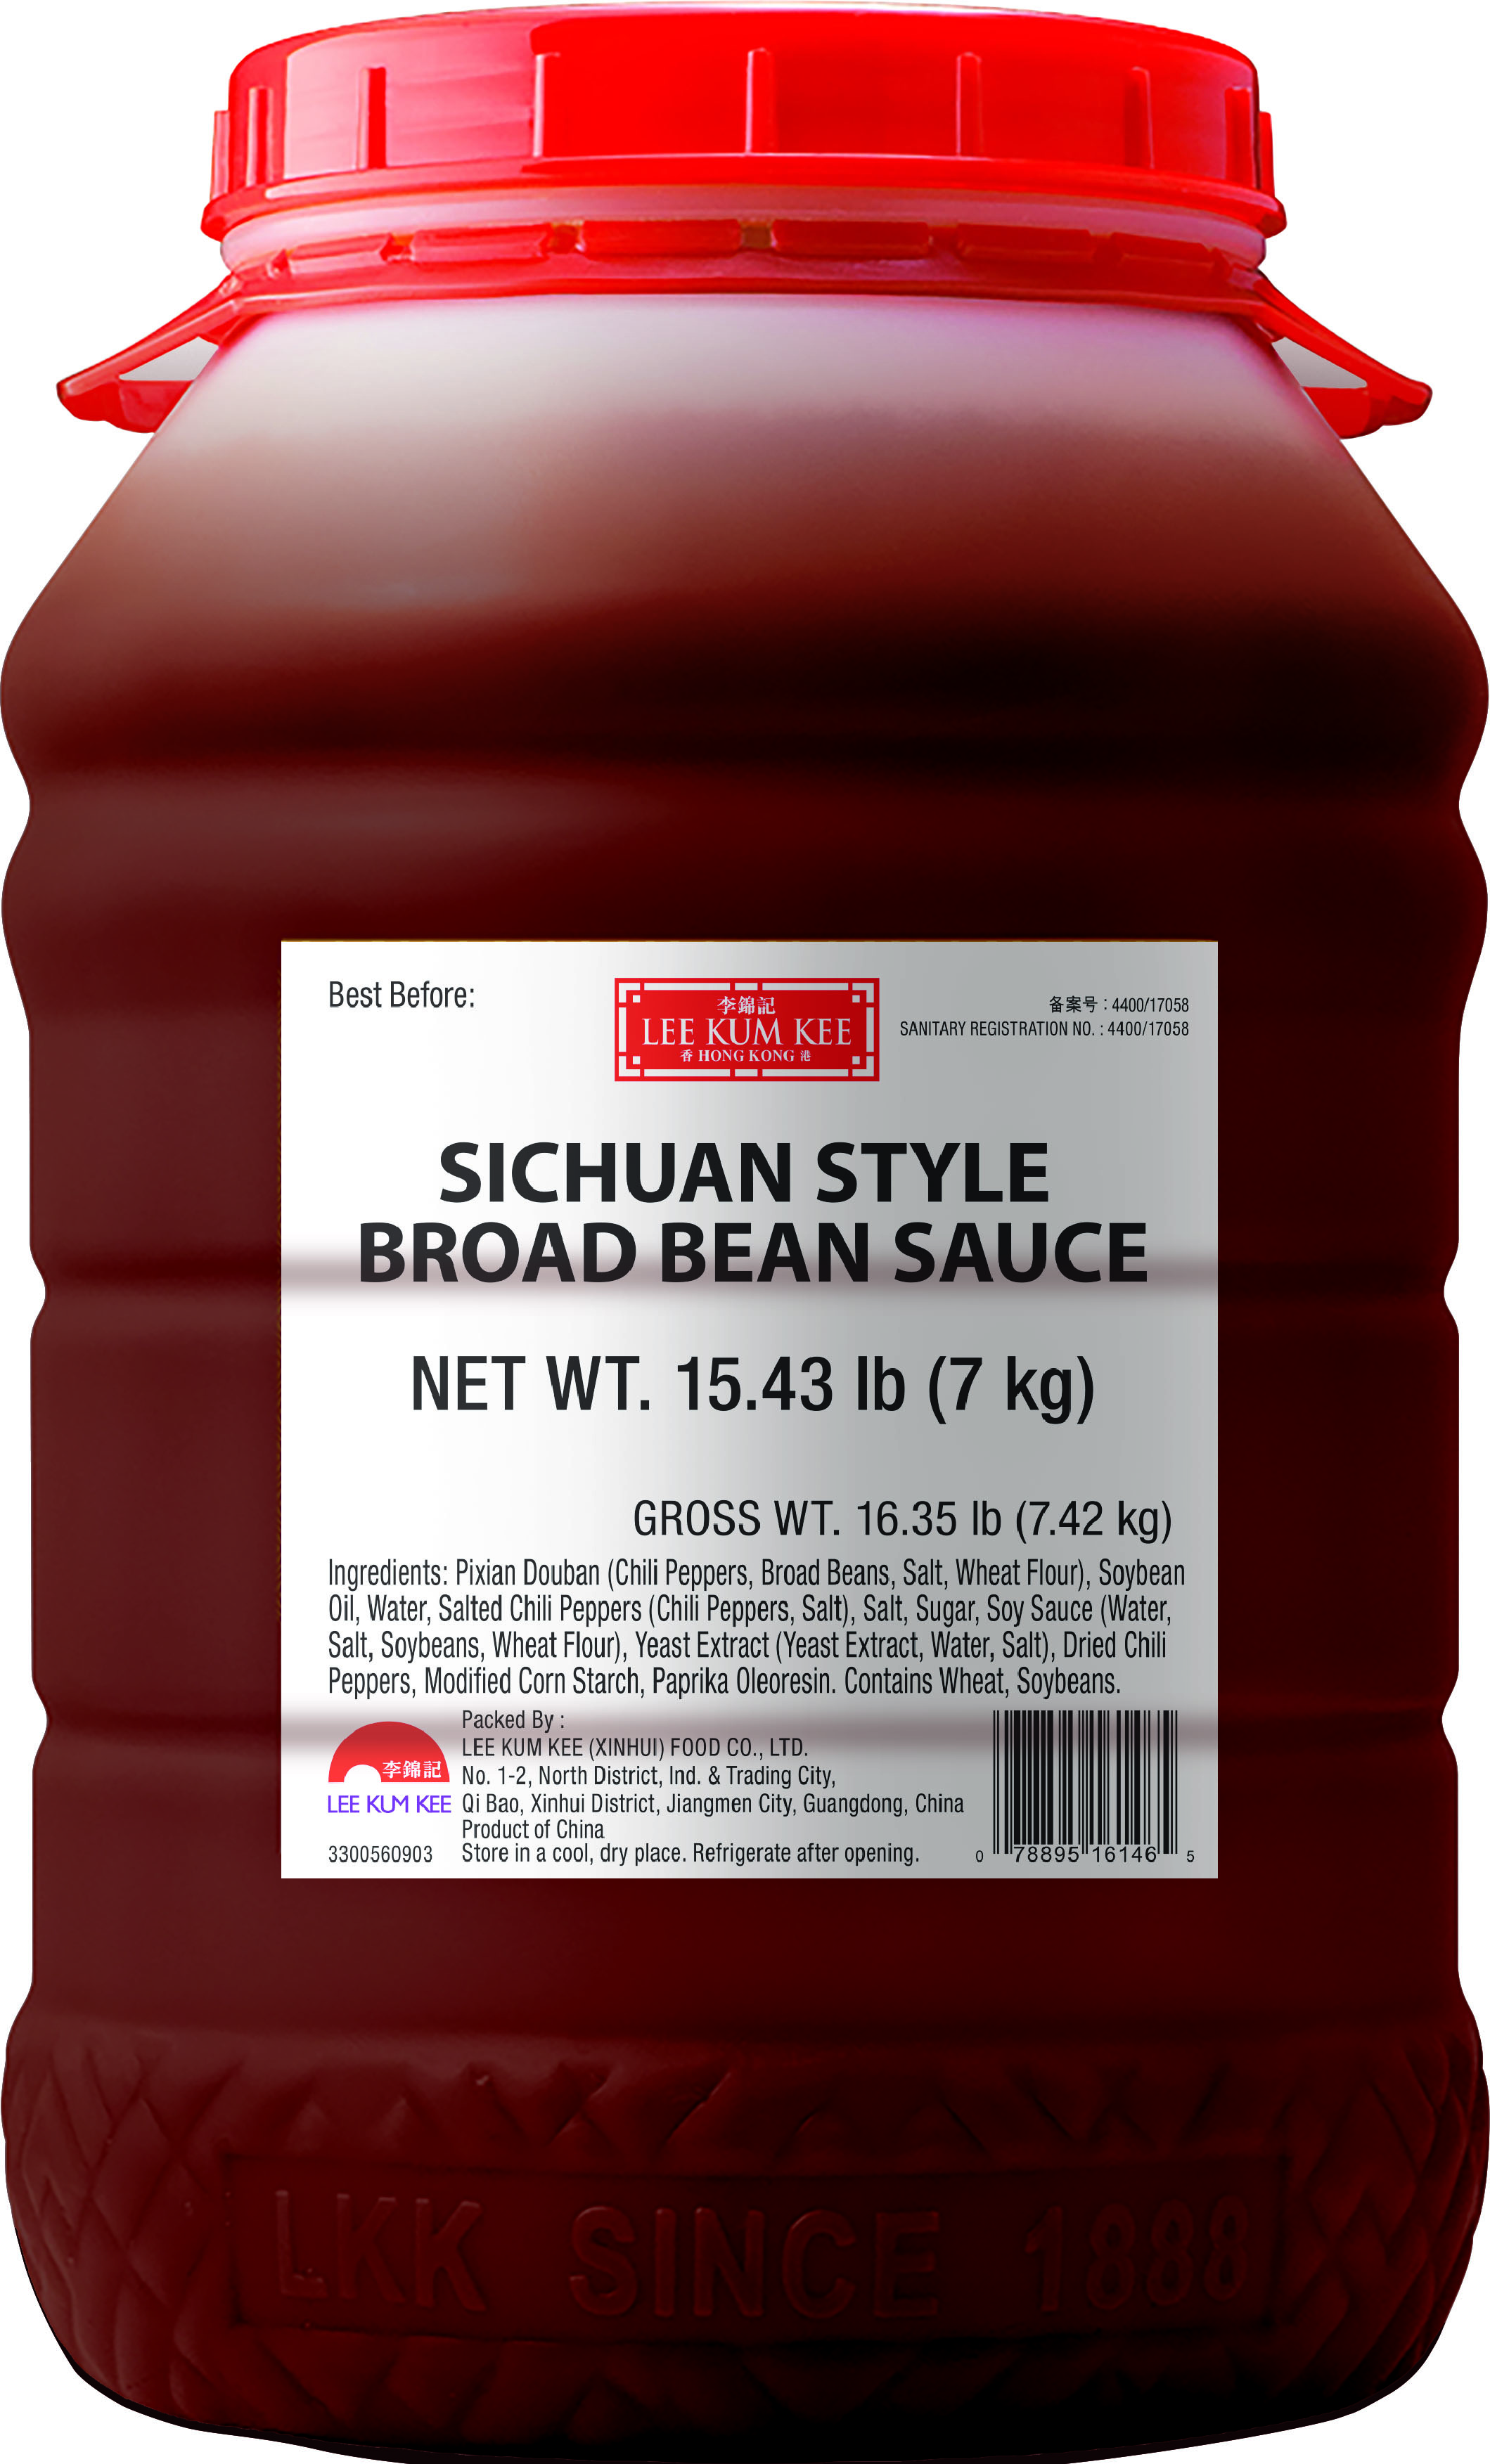 Sichuan Style Broad Bean Sauce, 15.43lb (7kg) Pail